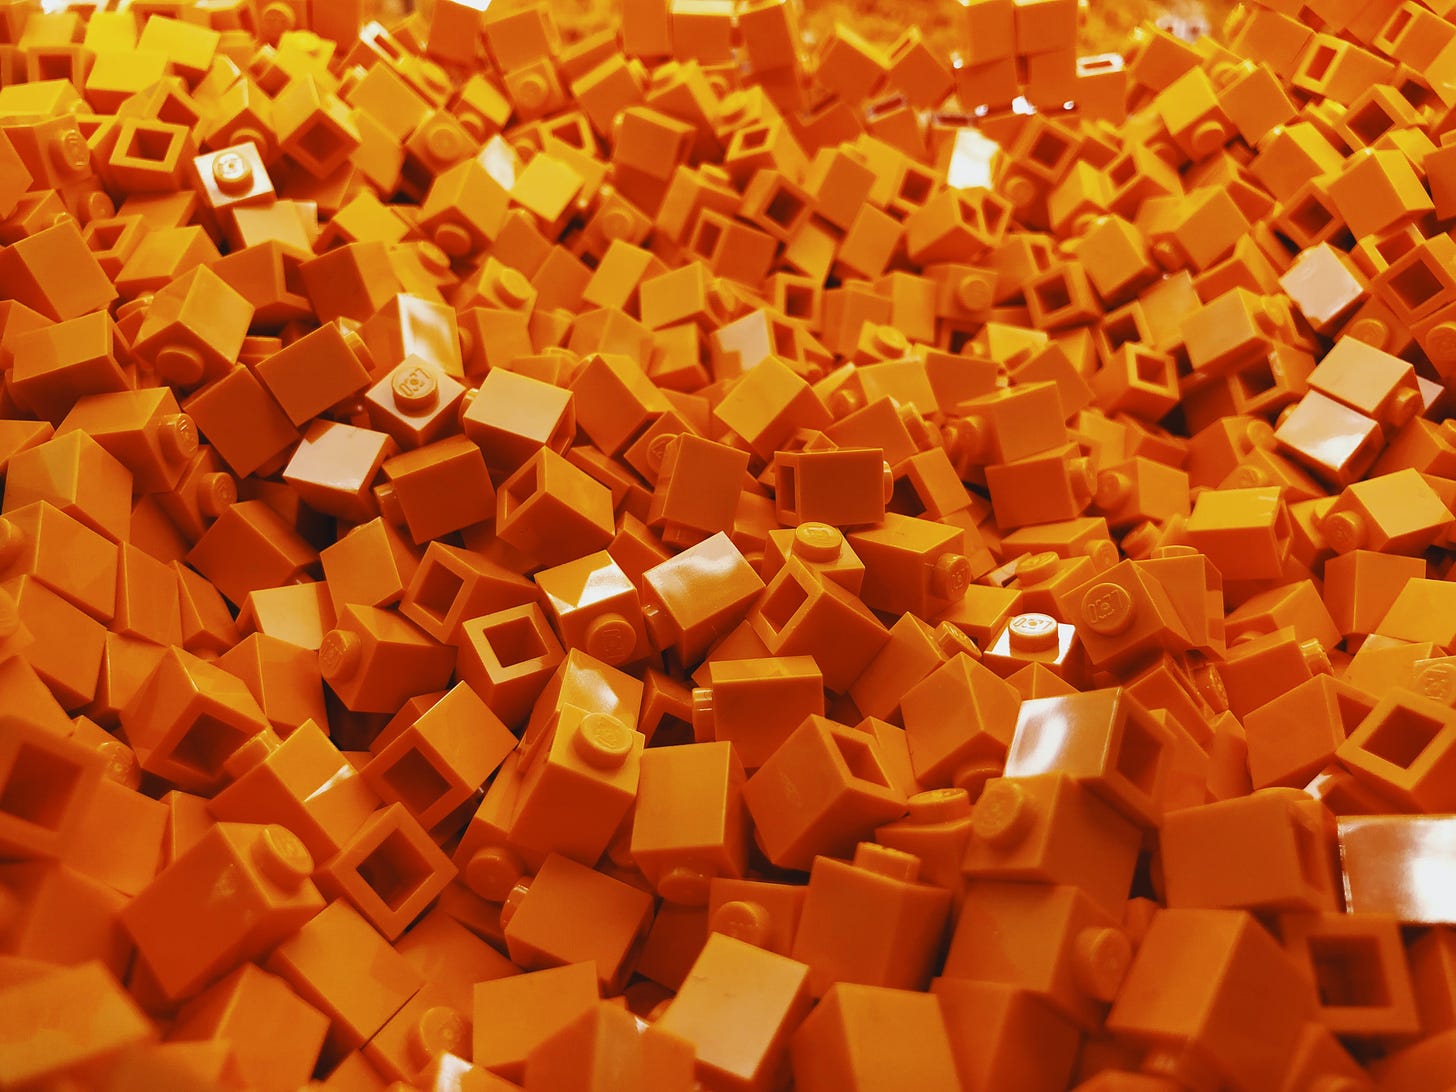 A large pile of orange Lego bricks.